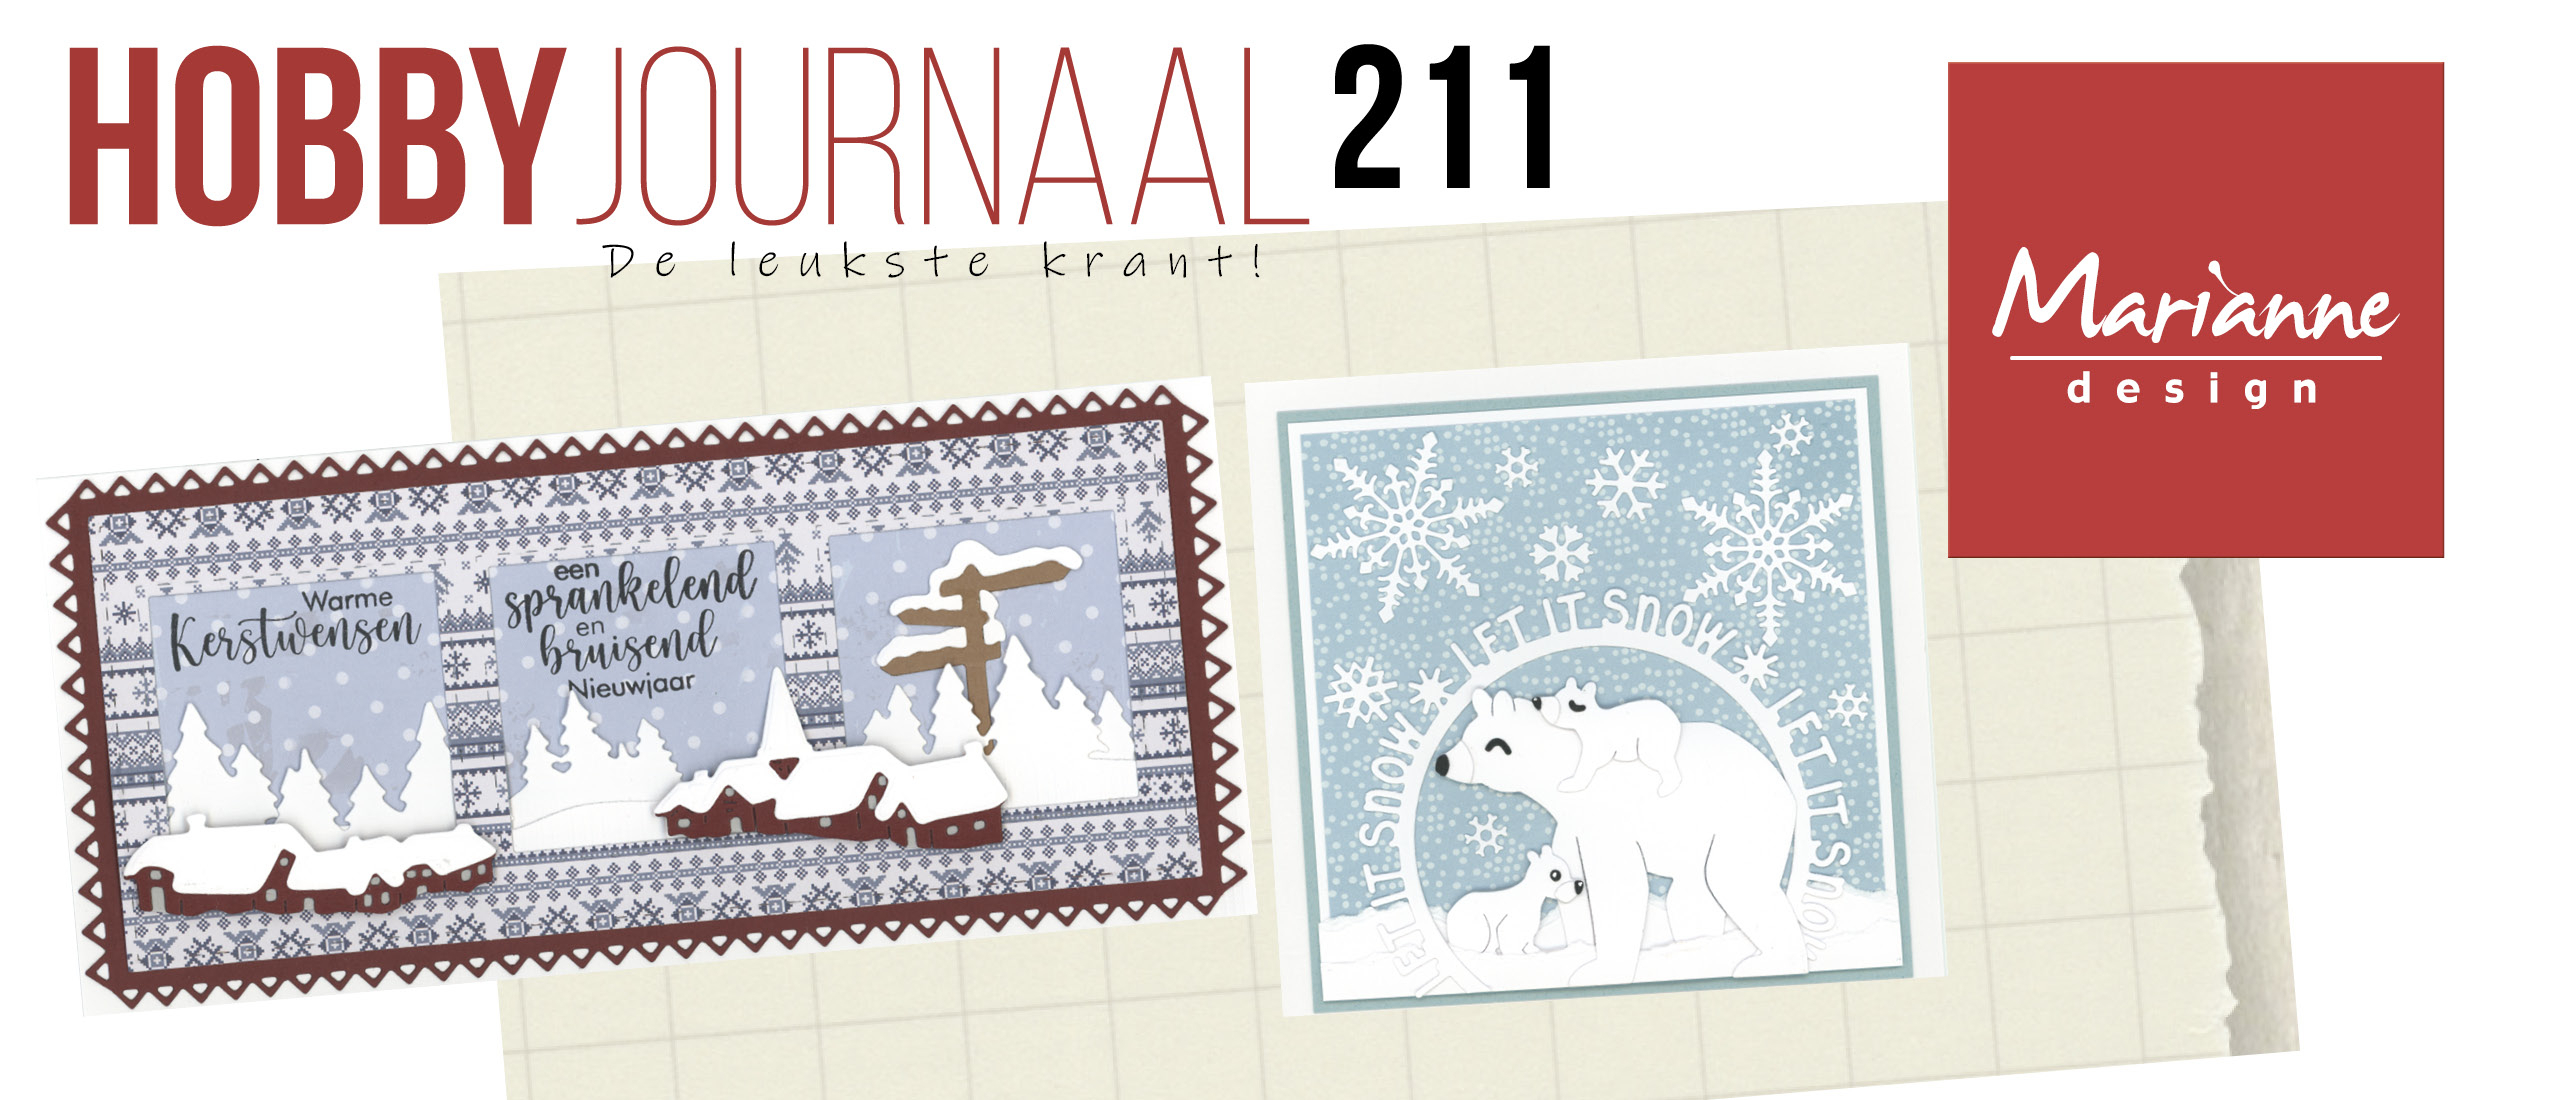 Winterse (kerst)kaarten met Marianne Design in Hobbyjournaal 211